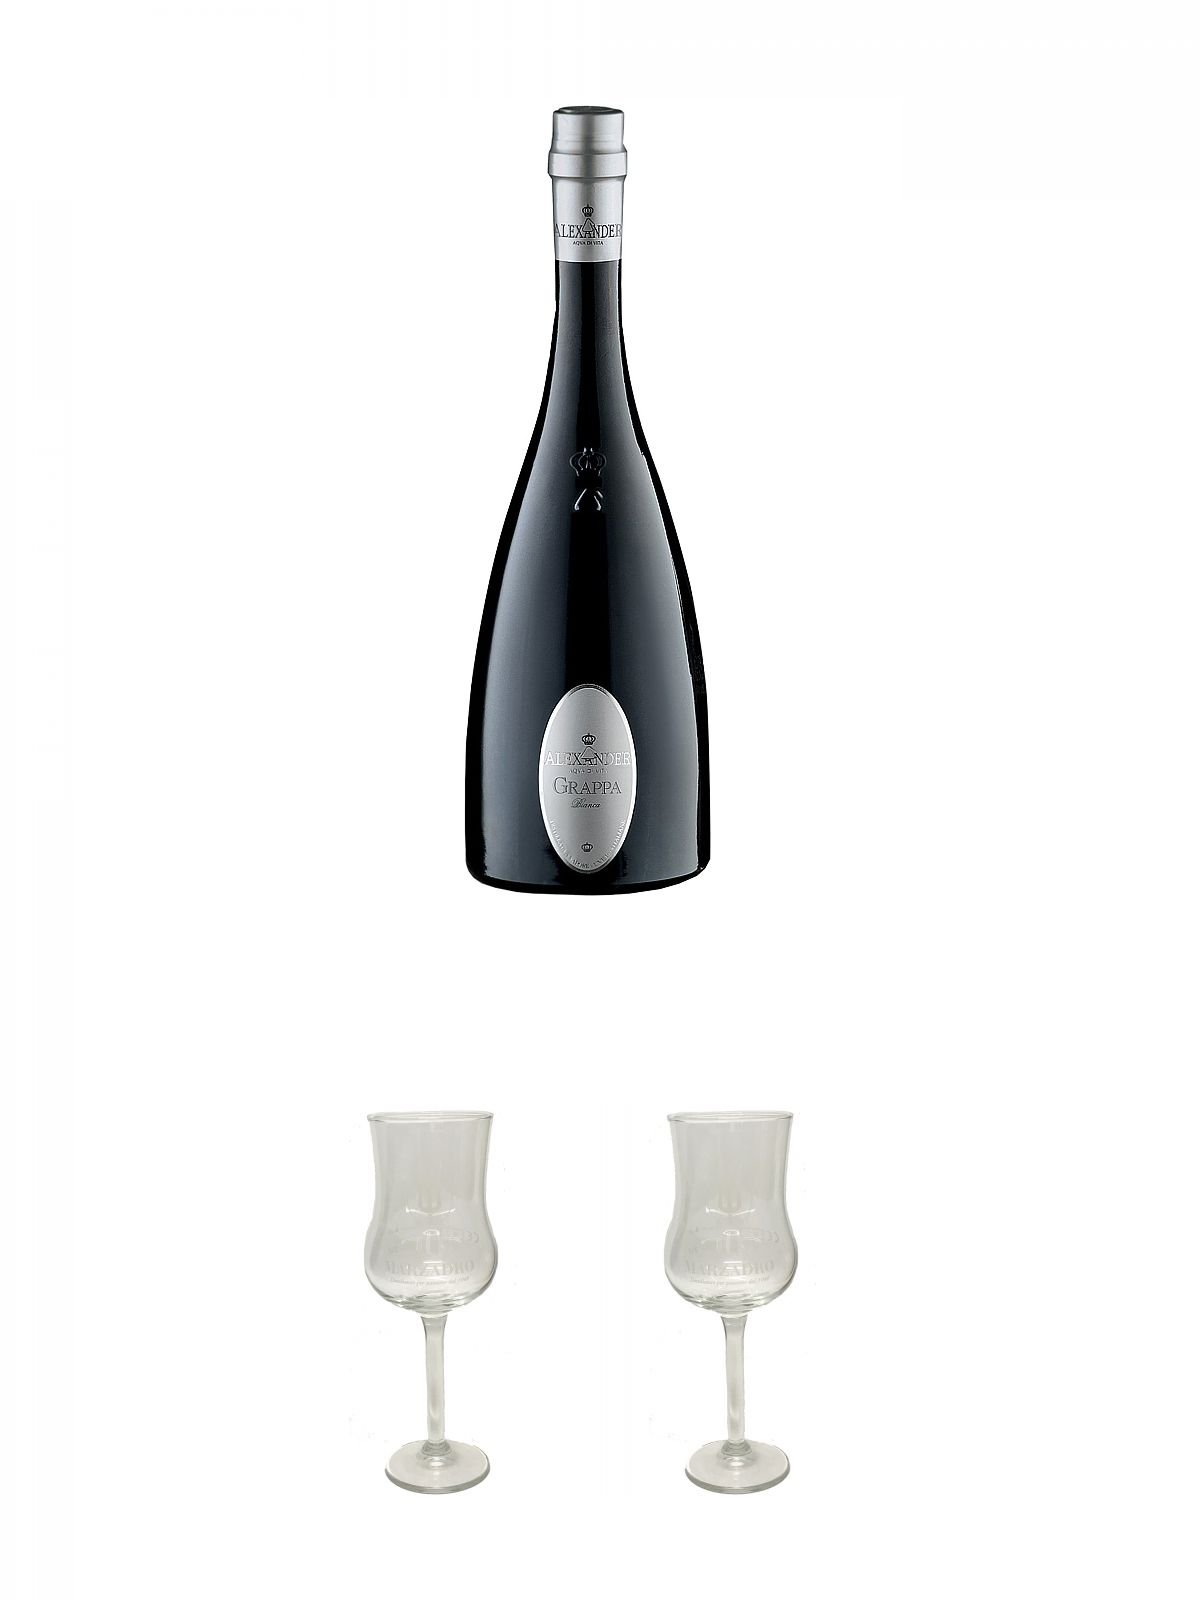 Alexander Bianca Grappa 0,7 Liter (dunkle Flasche) + Marzadro Grappa Gläser mit Eichstrich 2cl und 4cl 1 Stück + Marzadro Grappa Gläser mit Eichstrich 2cl und 4cl 1 Stück